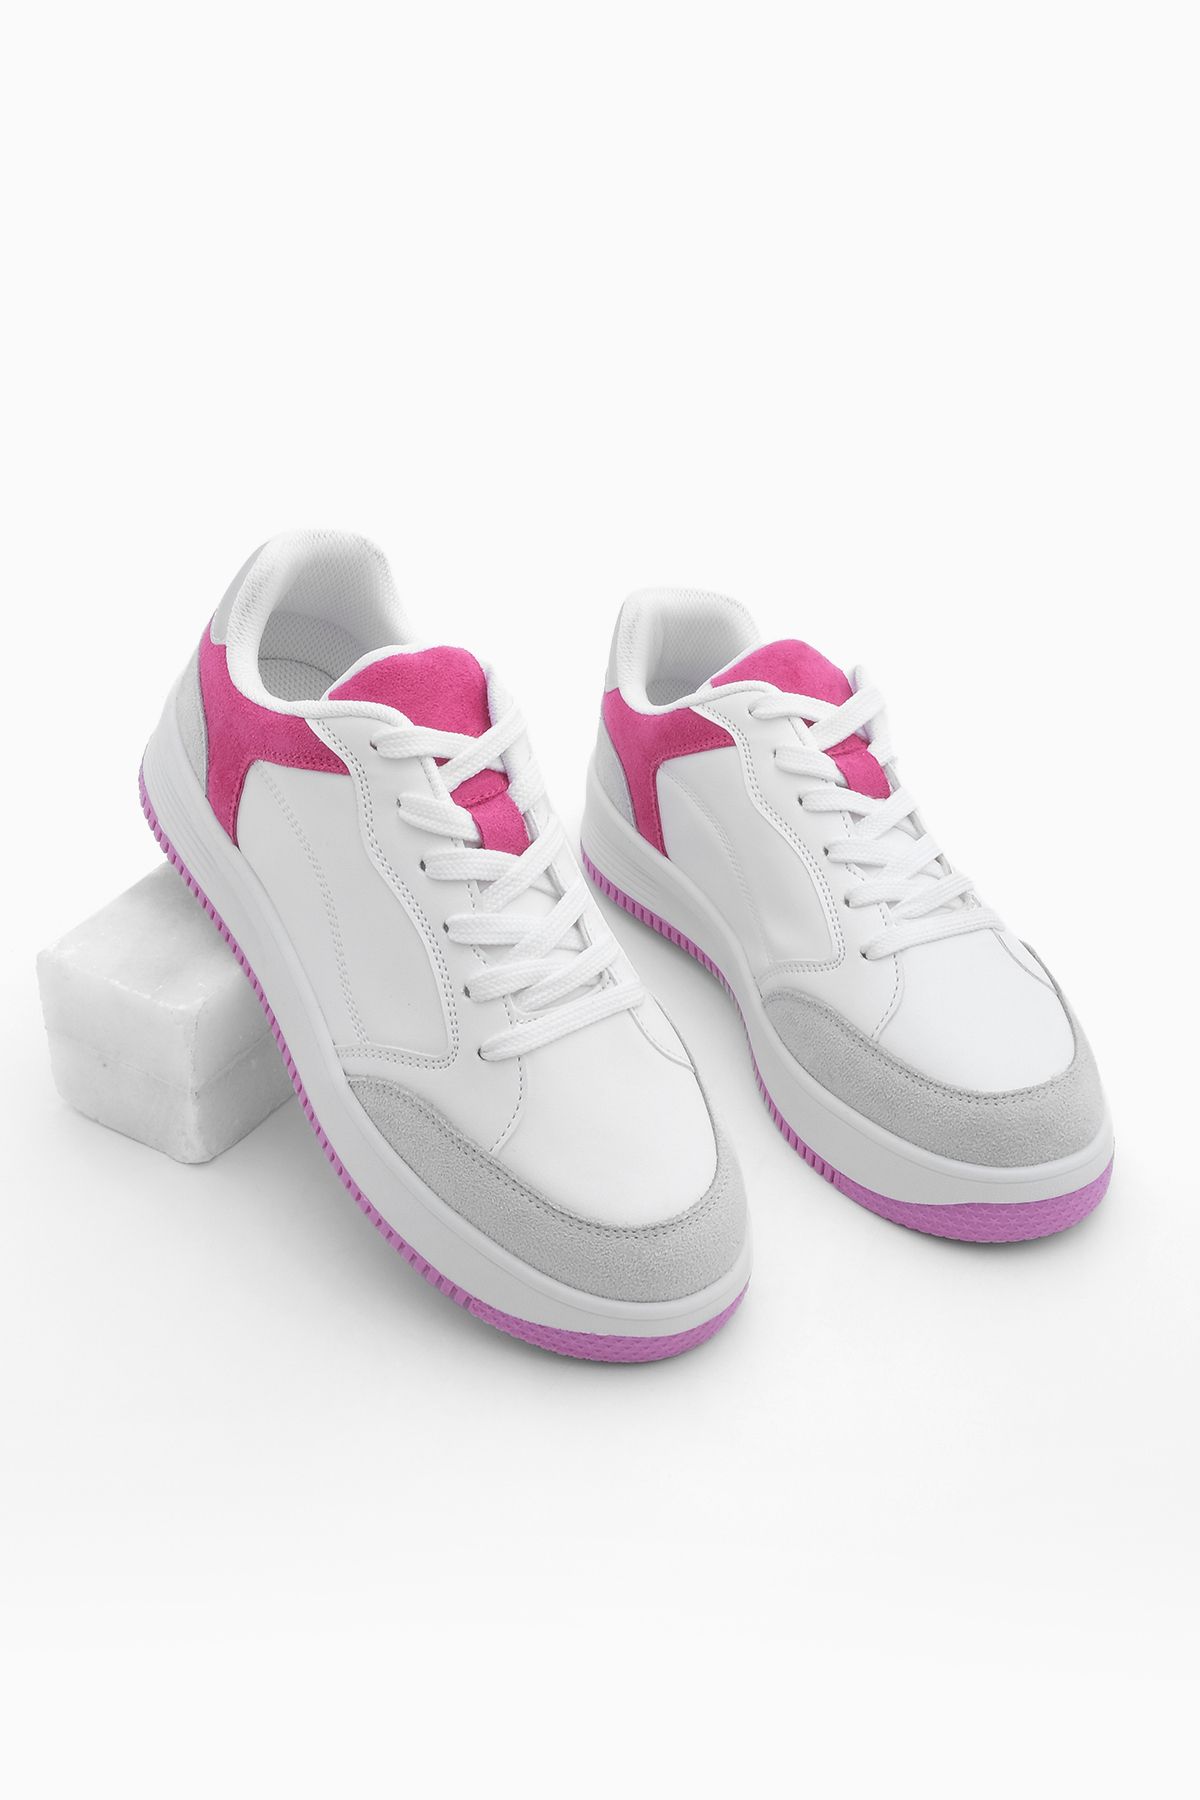 Marjin Kadın Sneaker Bağcıklı Spor Ayakkabı Ente Fuşya